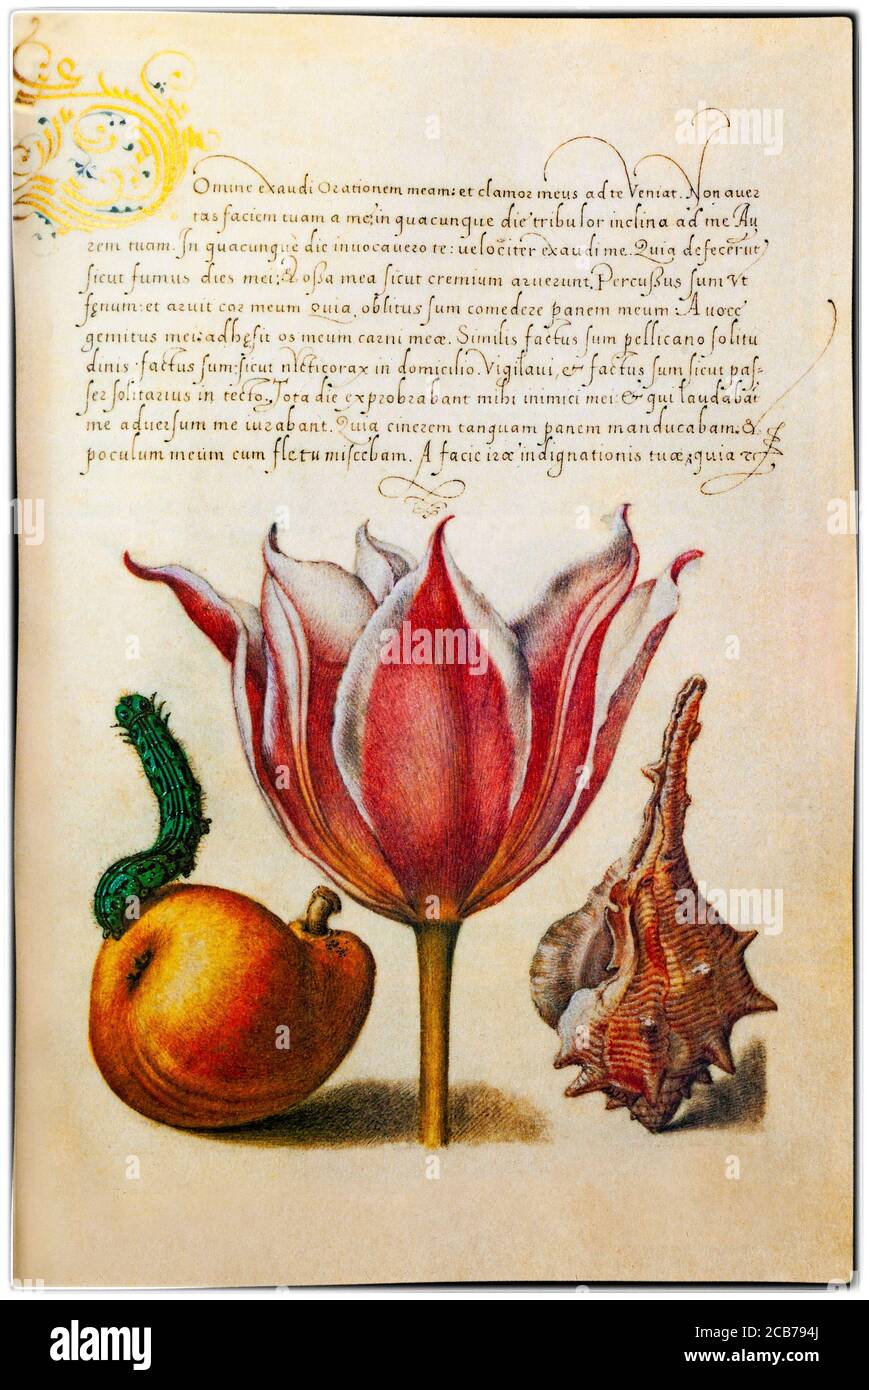 Eine Blumenminiatur (Tulpen) von Georg Höfnagel (1542-1601), einem flämischen Maler und Iniaturisten, der von Kaiser Rudolf II. Beauftragt wurde, die Mira calligraphiae monumenta (das Musterbuch der Kalligraphie) zu illustrieren, in dem die Miniatur erscheint. Die Pflanzen wurden von Charles de l'Ecuse aka Clusius (1526-1609), Direktor des Botanischen Gartens Leiden in Holland, angebaut. Stockfoto